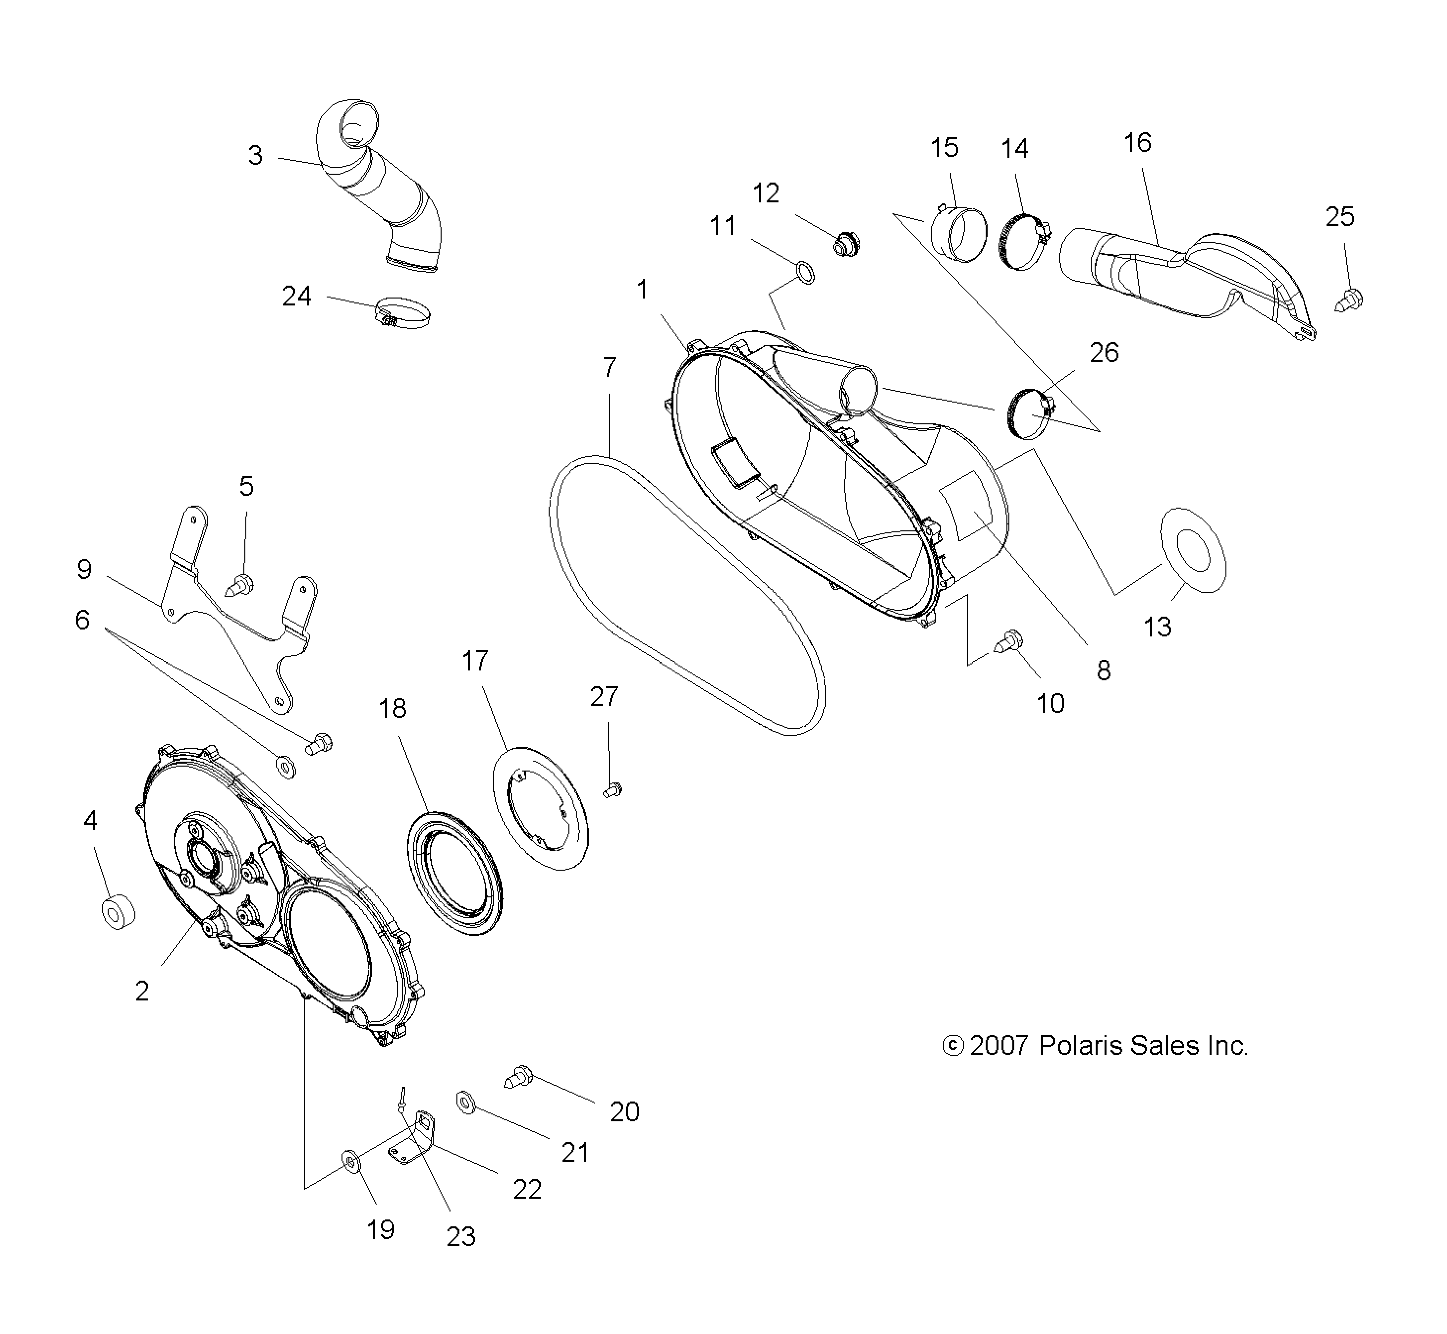 Foto diagrama Polaris que contem a peça 2201851